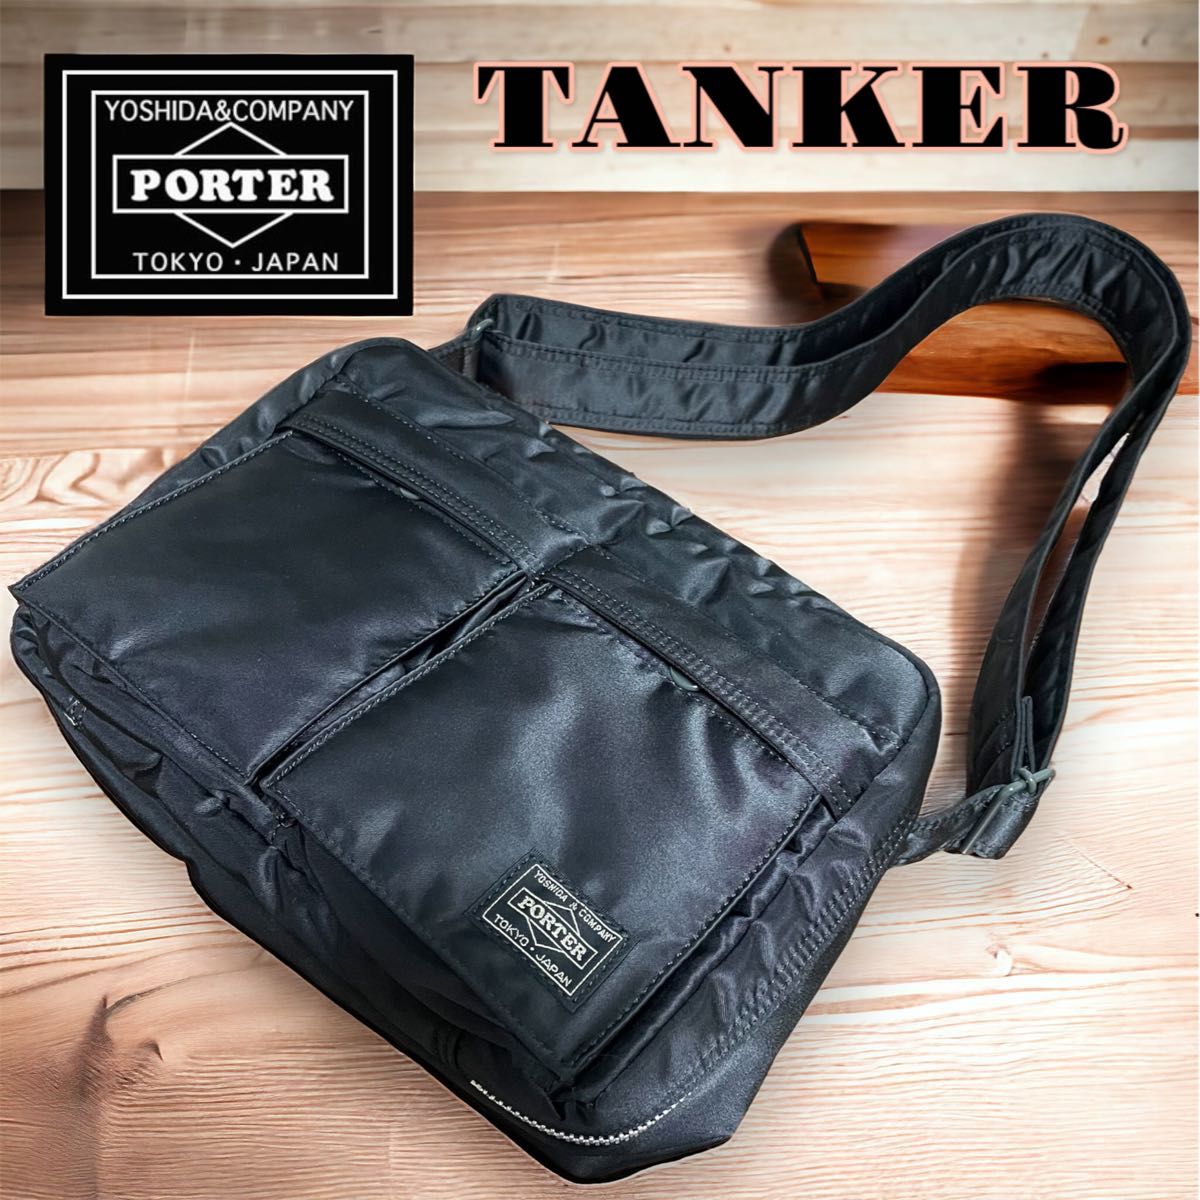 【未使用品】PORTER TANKER SHOULDER BAG(S) ポーター ショルダーバッグ 吉田カバン 2層式  斜め掛け